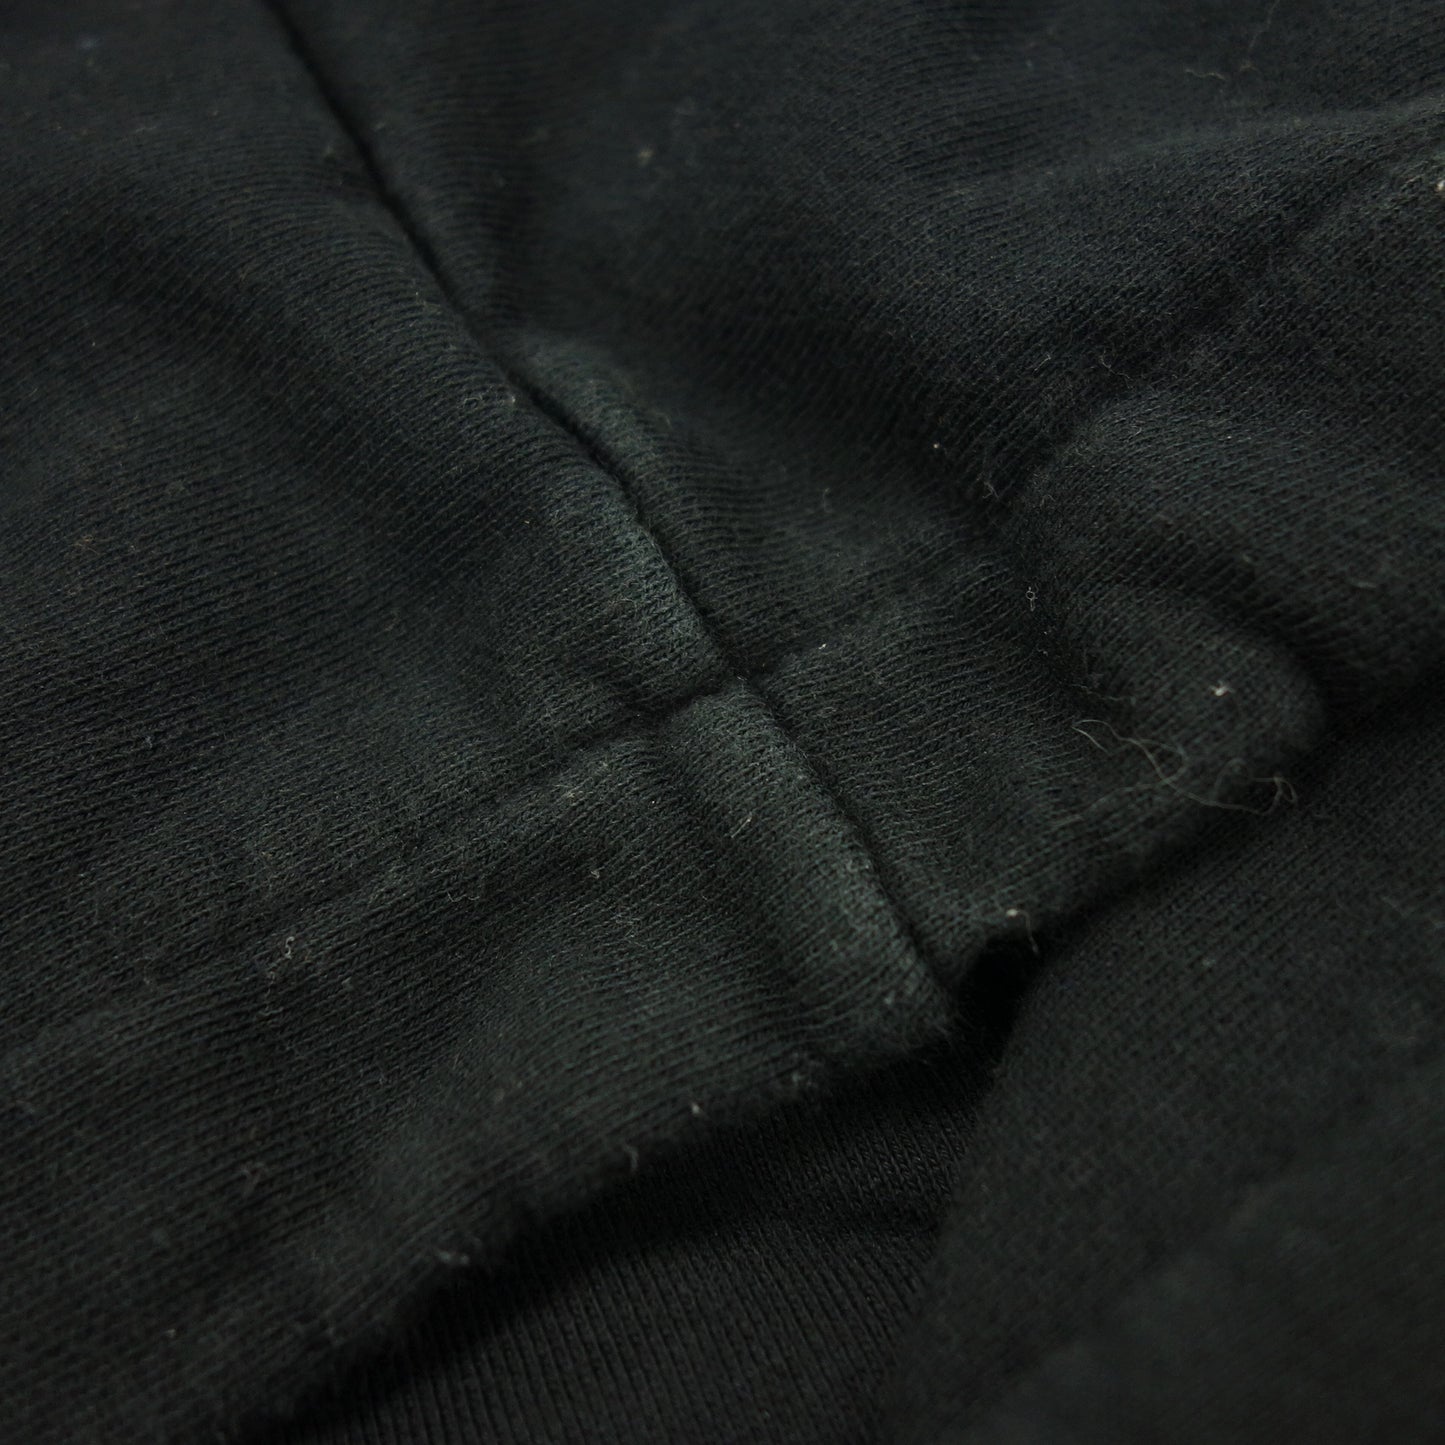 Used ◆ Celine zip up hoodie chest logo Eddie period 2Y28B670Q men's size M black CELINE [AFB33] 